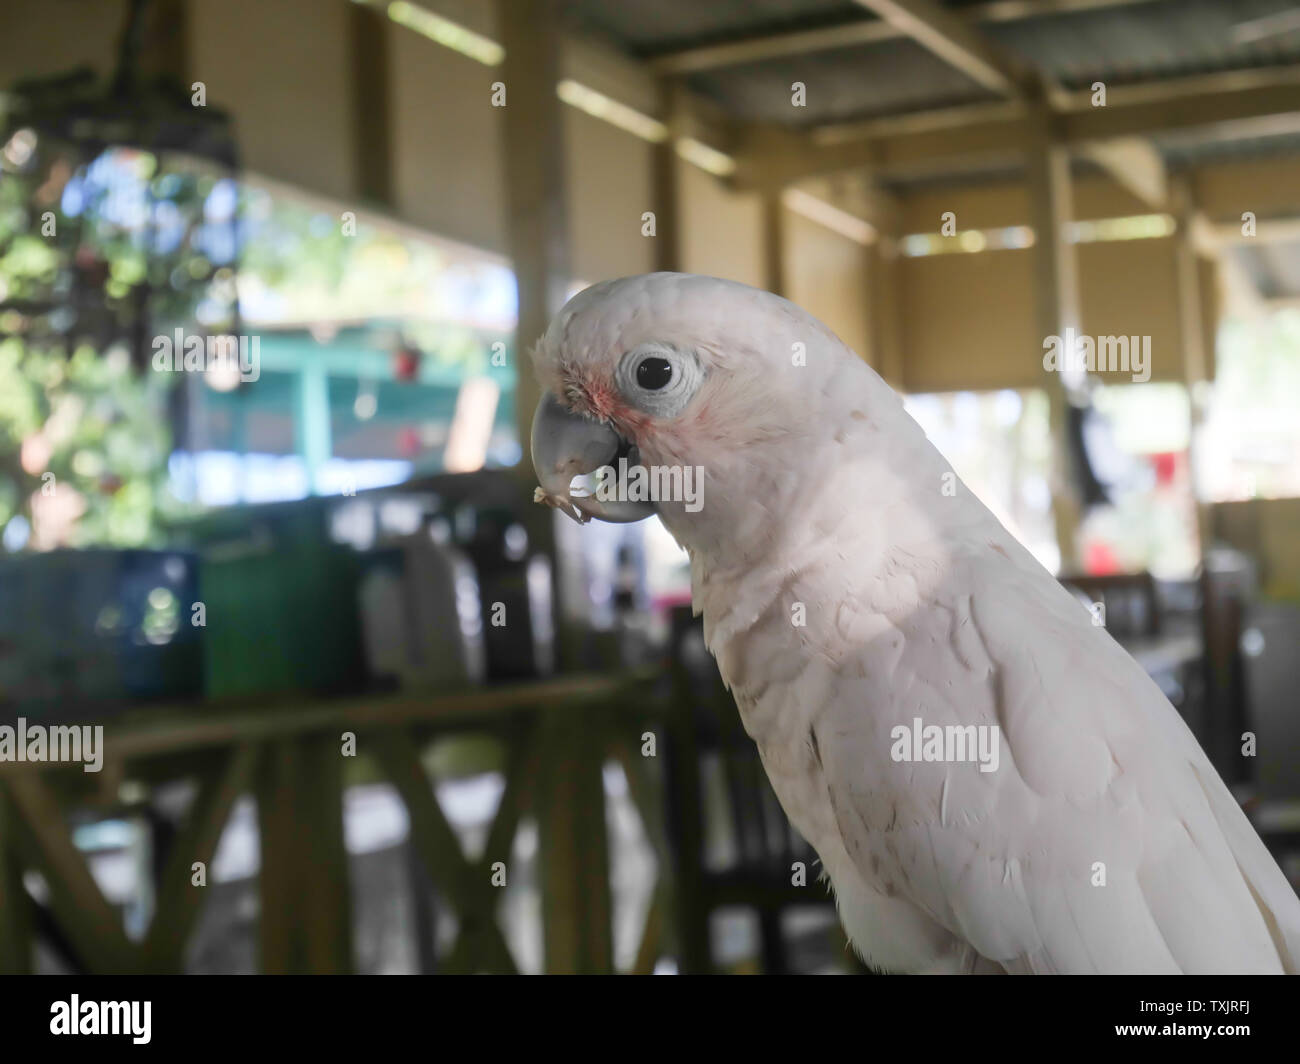 Papageien, Papageien in Farm. Weiß ara Papagei, Papagei, ist ein Haustier  Stockfotografie - Alamy